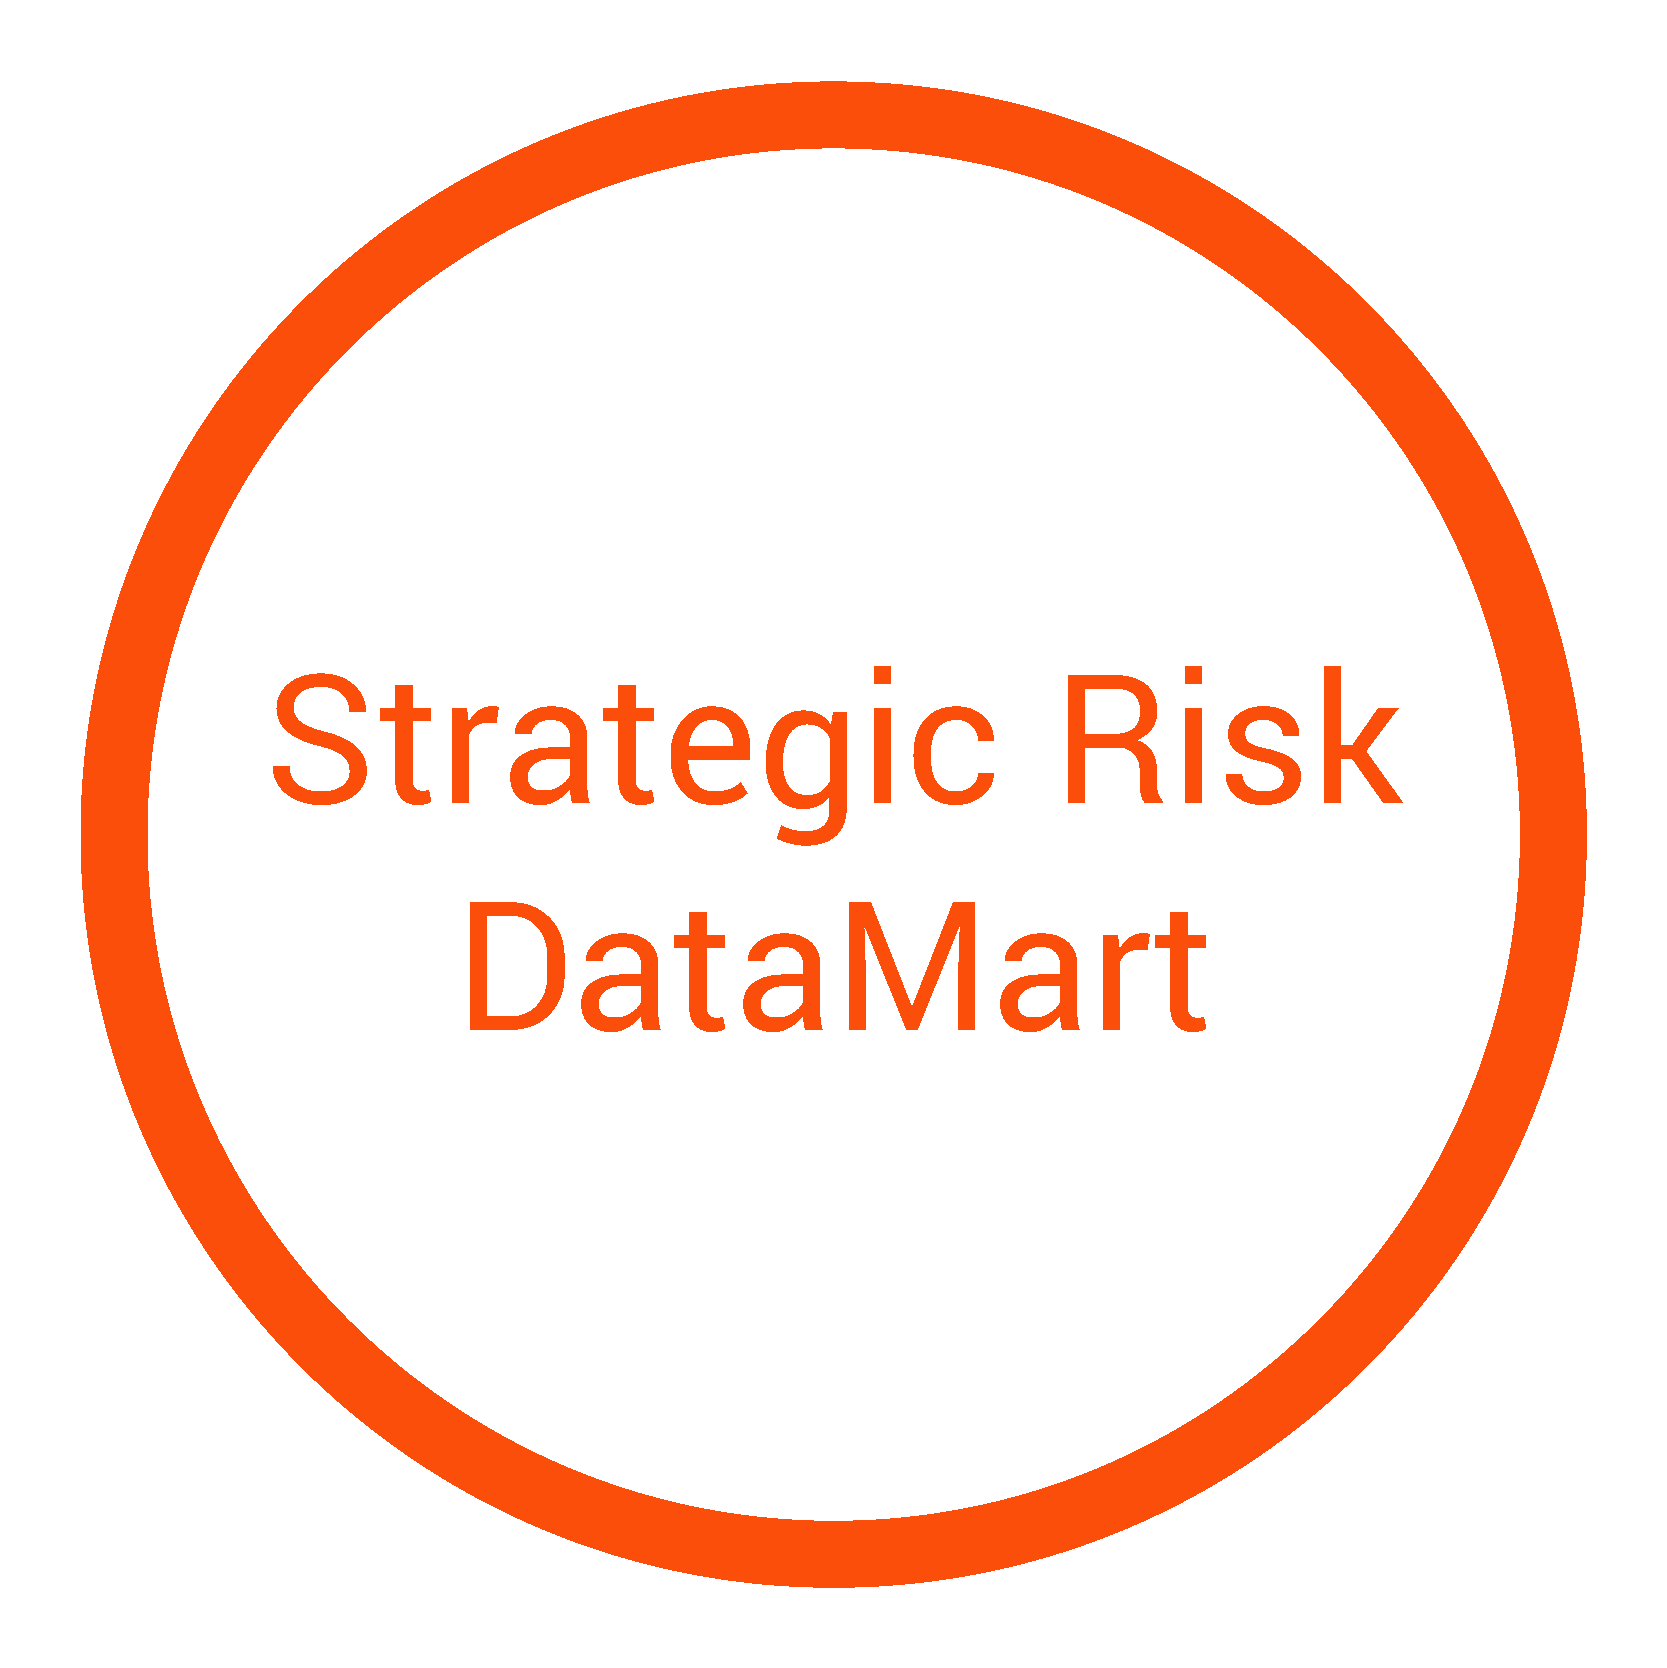 Strategic Risk DataMart